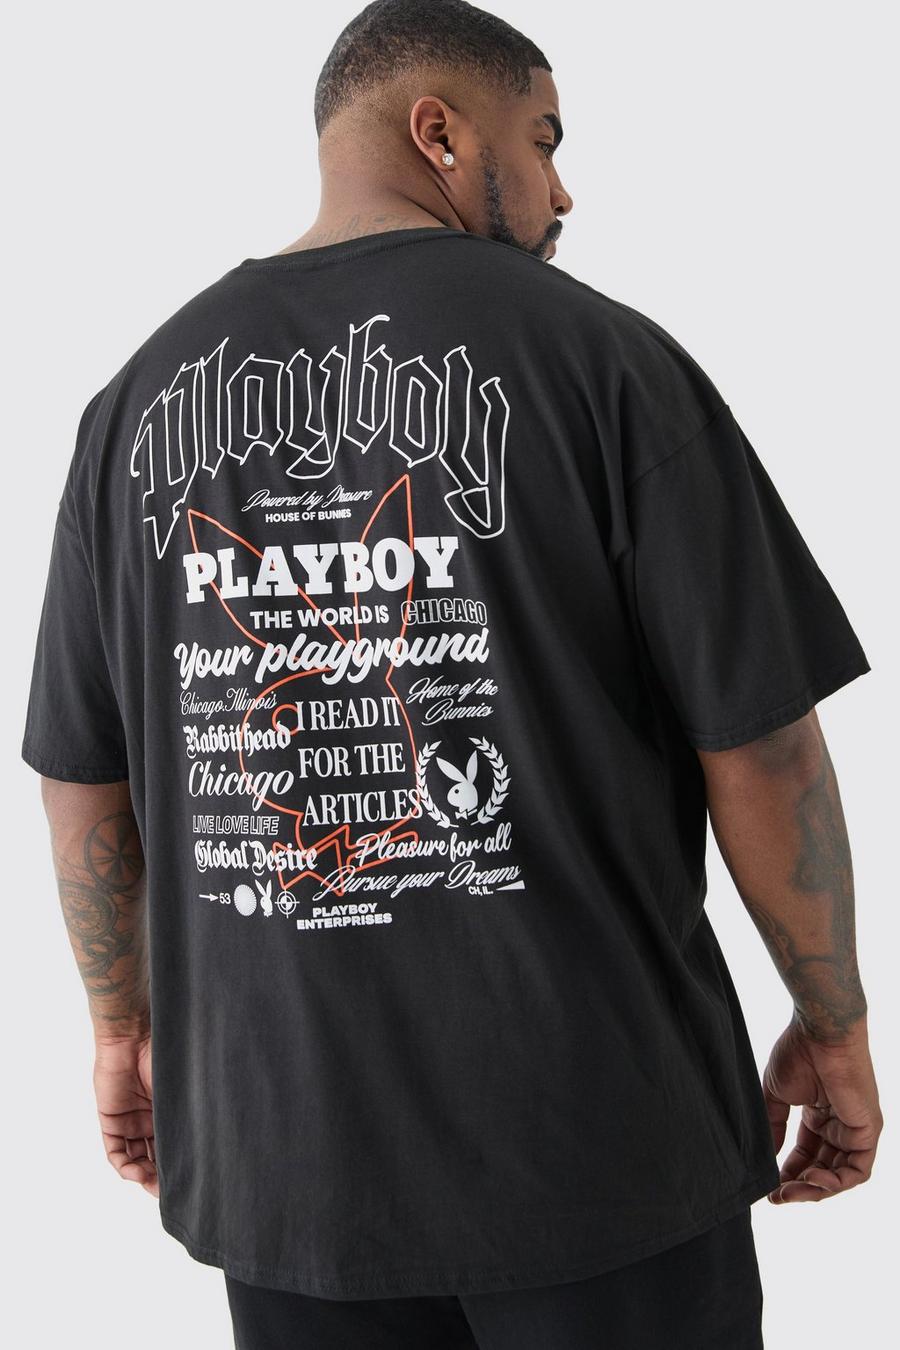 Plus Playboy Badge Printed Licensed T-shirt In Black